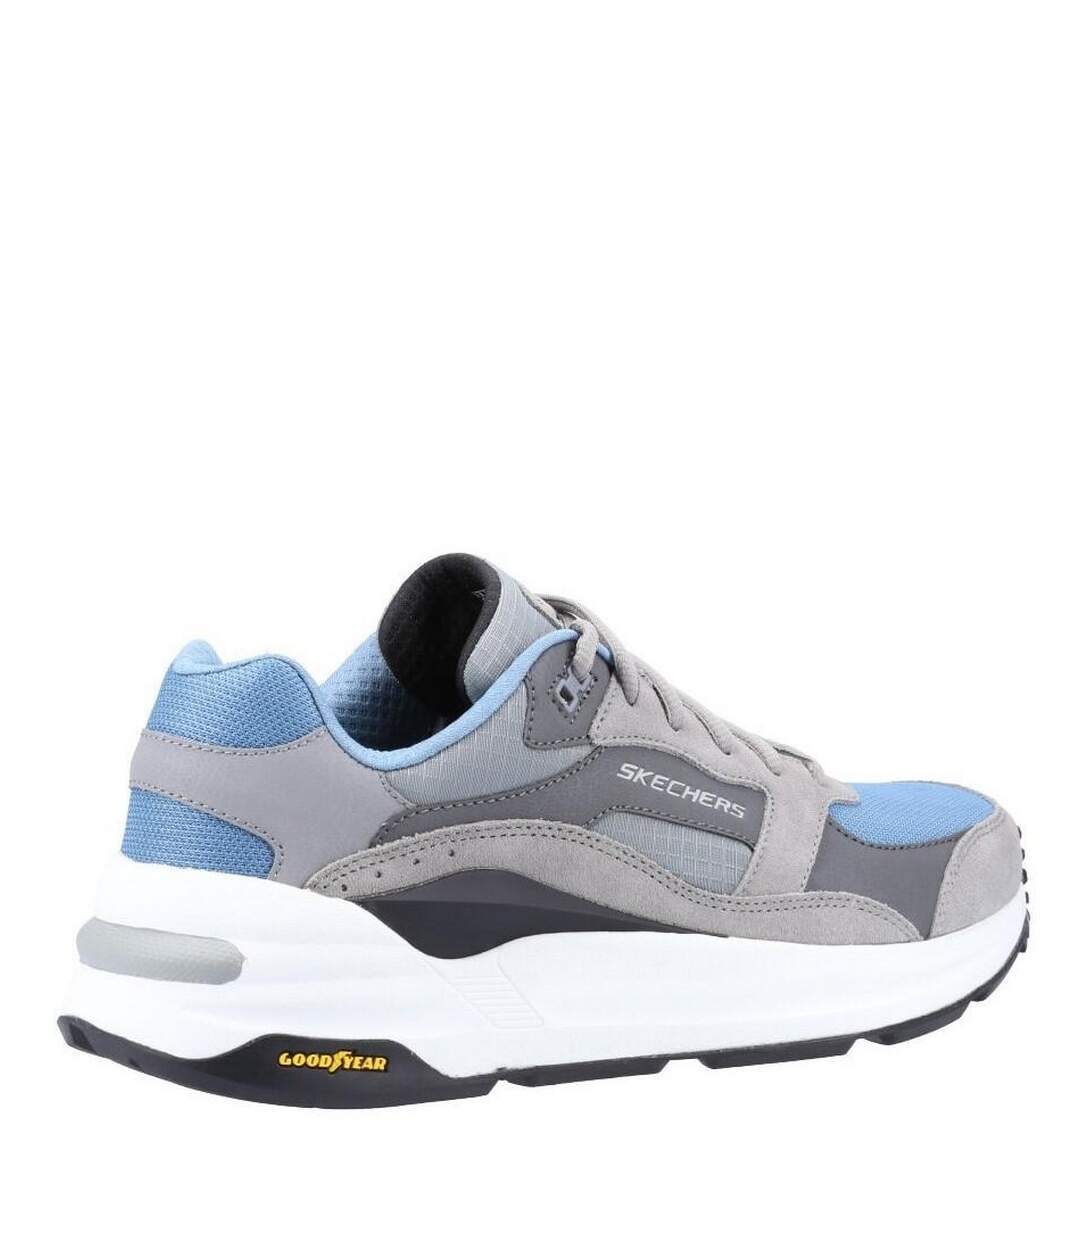 Skechers Mens Global Jogger Leather Sneakers (Gray/Blue) - UTFS8550